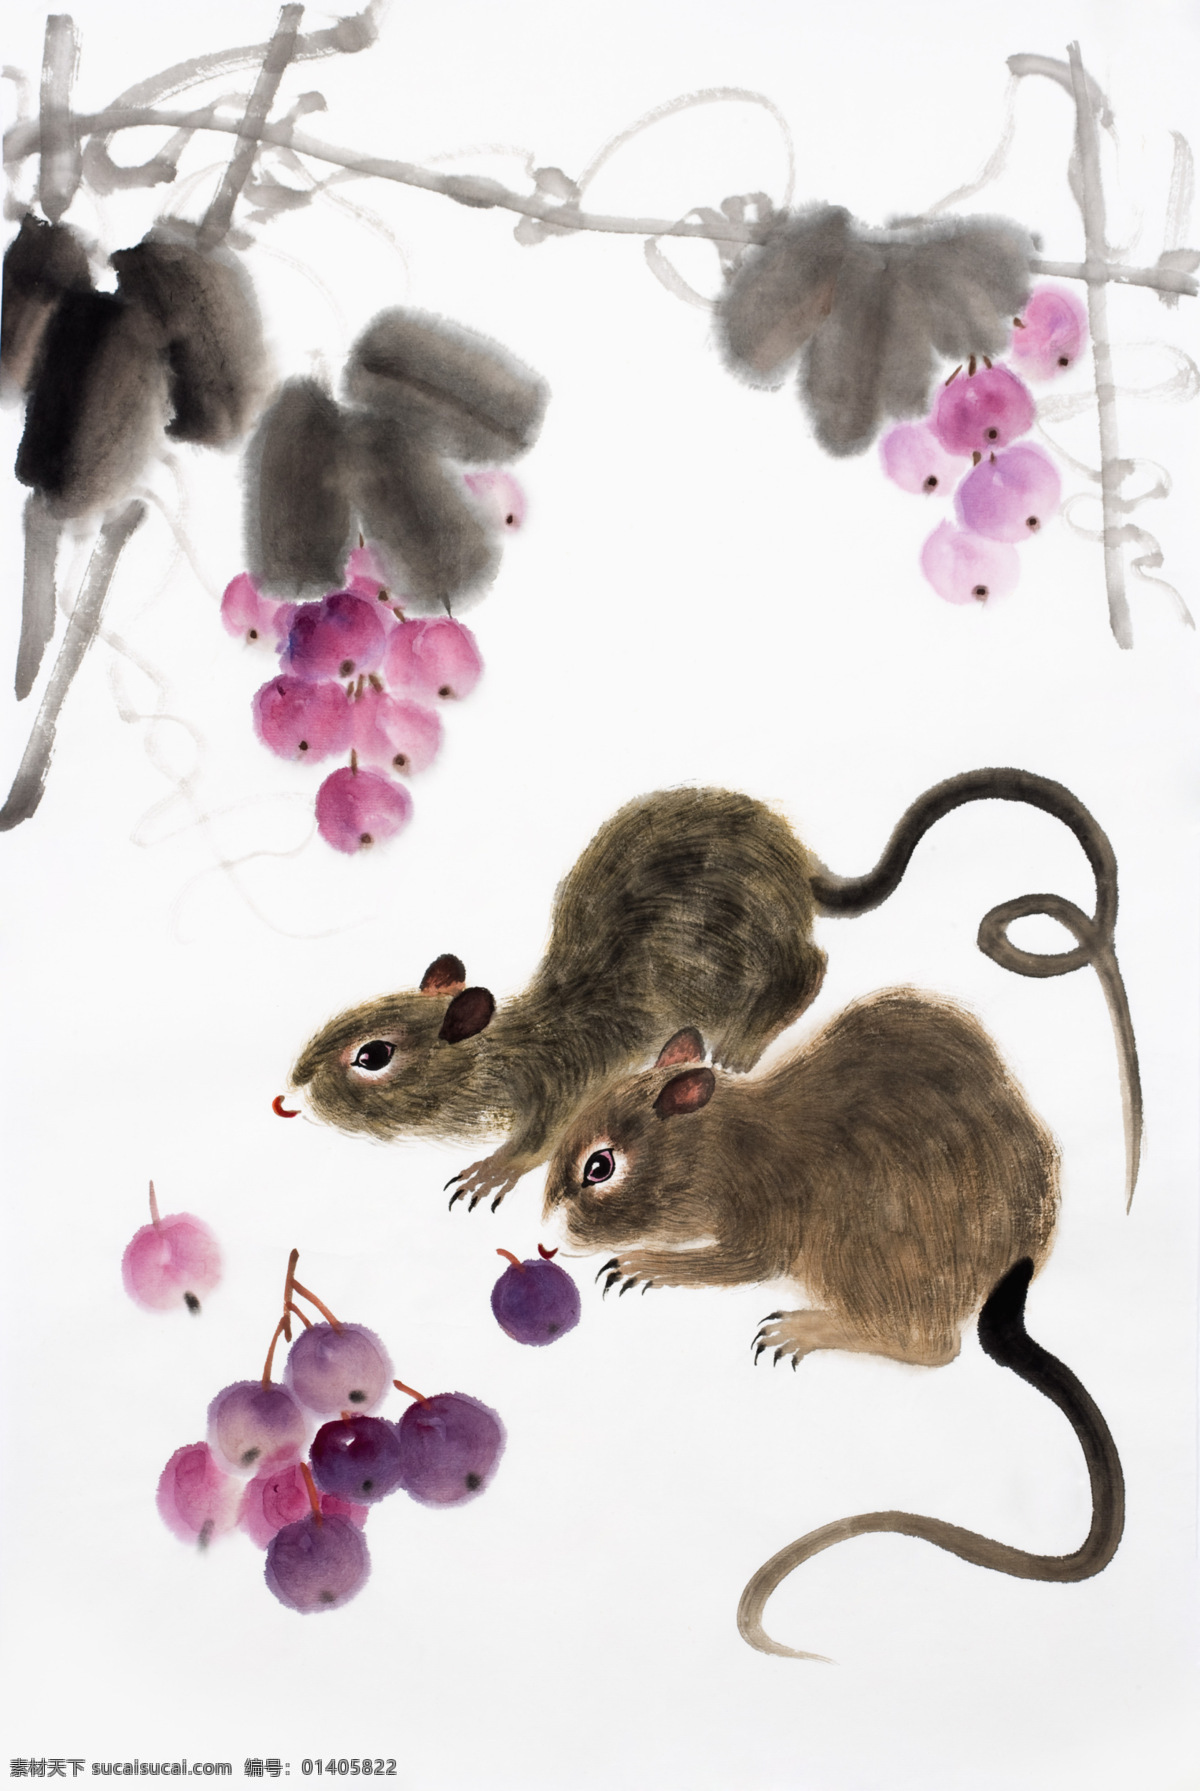 老鼠 鼠 鼠年 可爱 绘画 水墨 果子 绘画书法 文化艺术